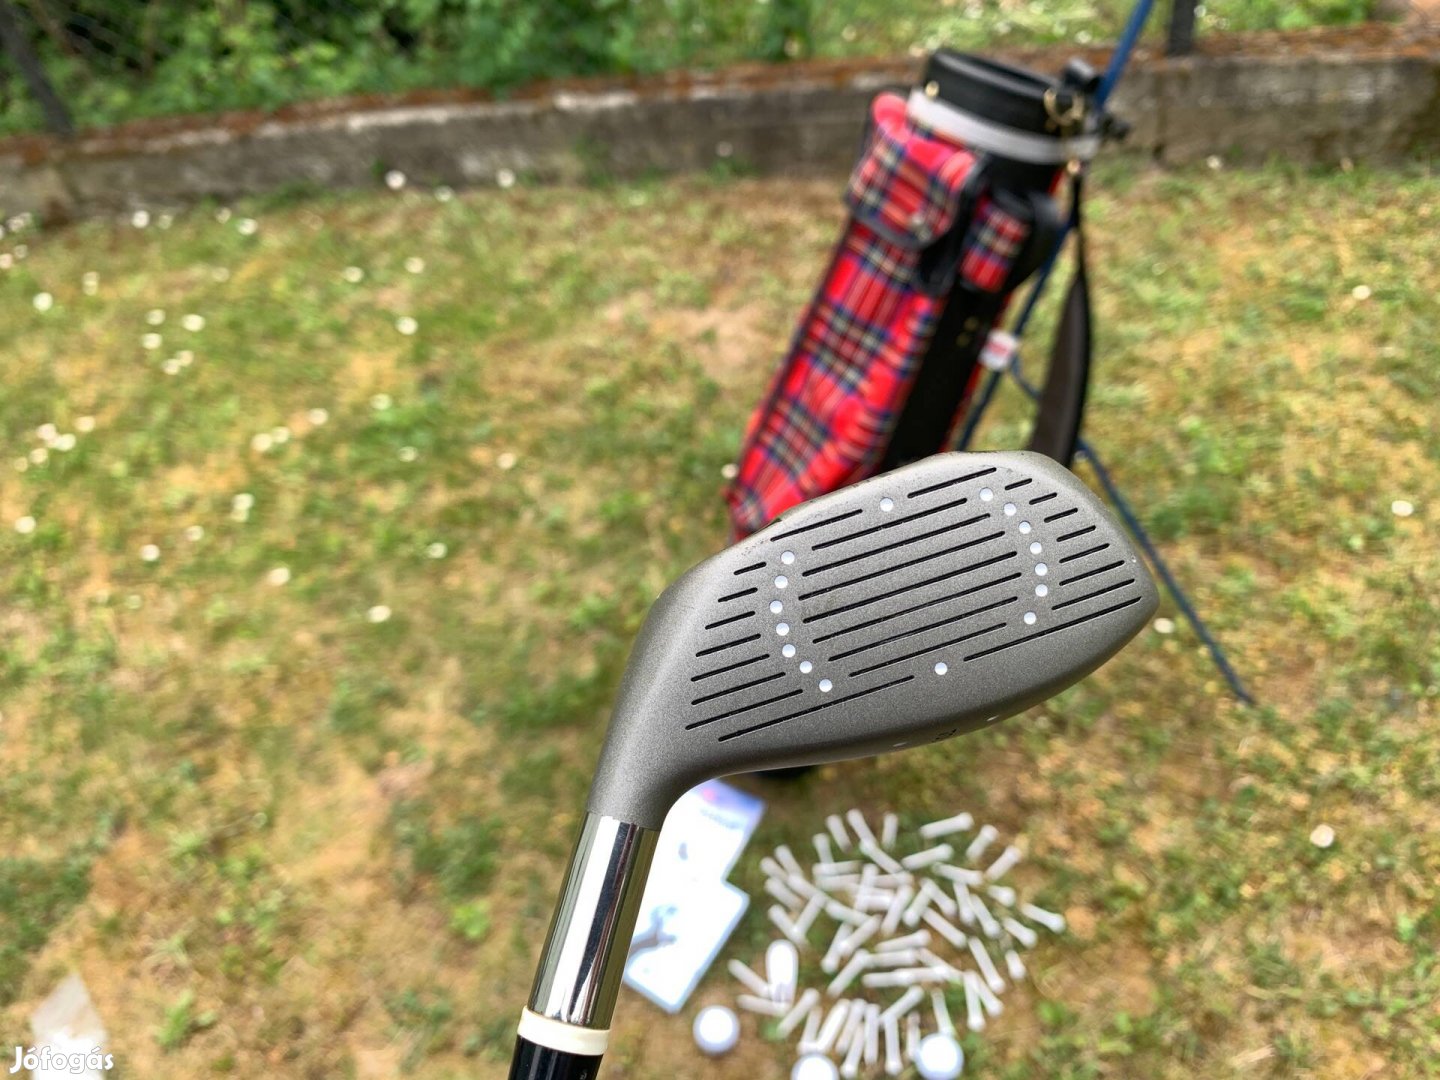 Golf készlet eladó golf bag űtők labdák teek - Azonnal átvehető vagy